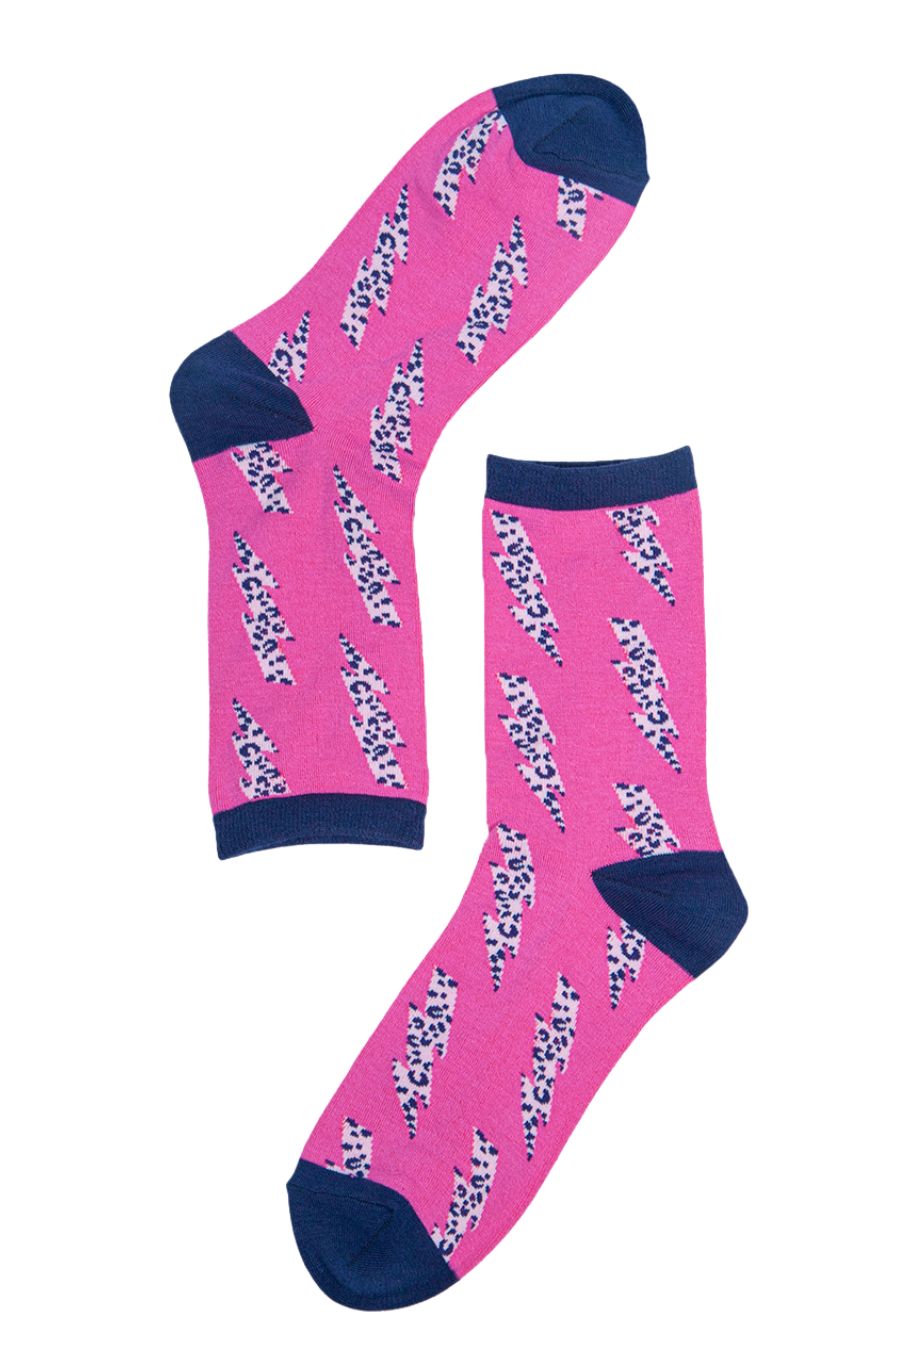 Womens Bamboo Socks Leopard Print Ankle Socks Lightning Bolt Pink